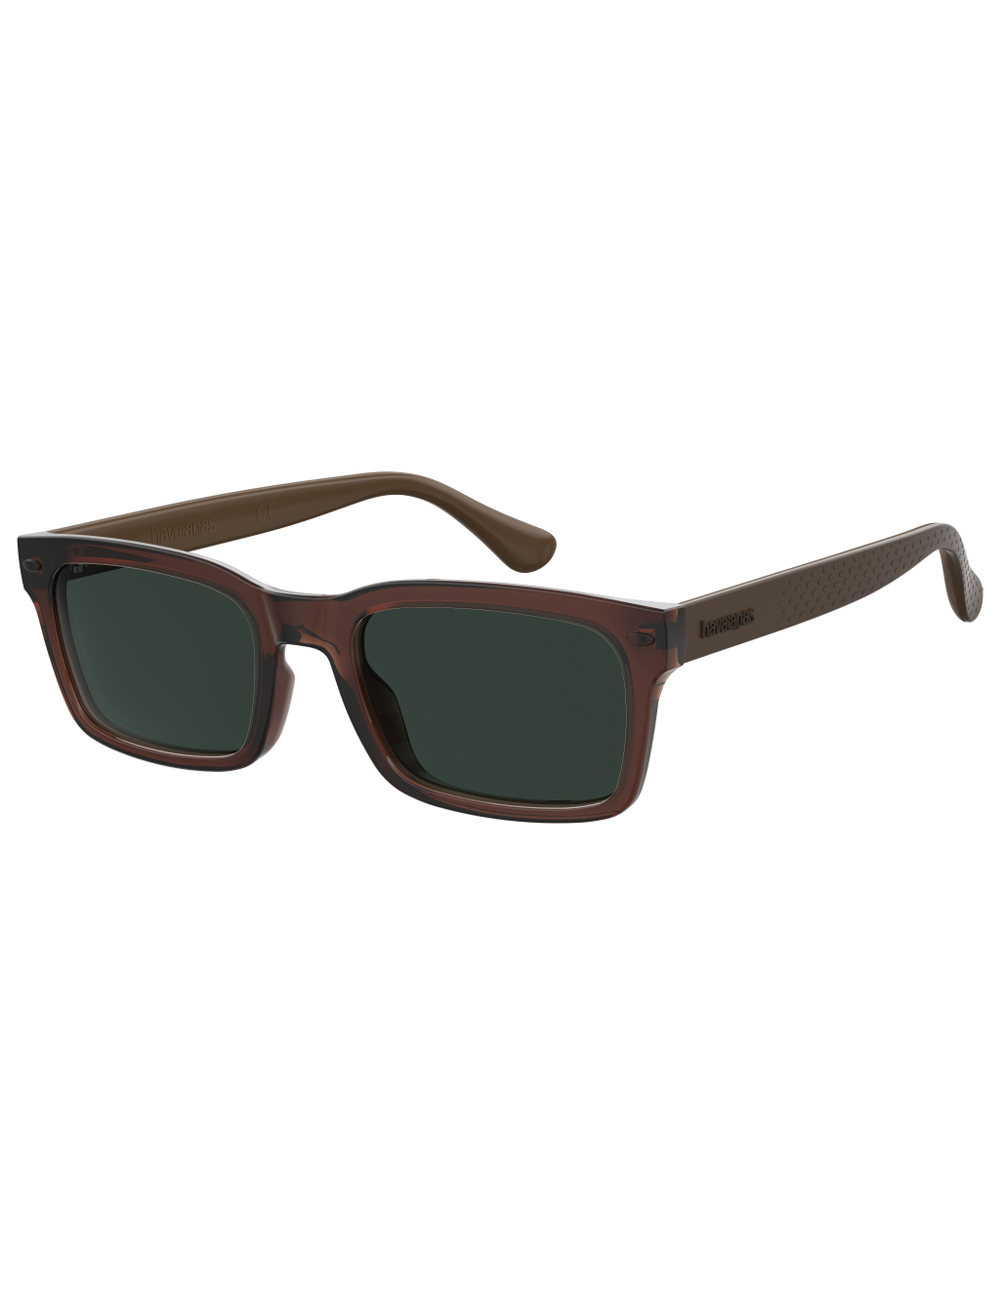 фото Солнцезащитные очки унисекс havaianas caetano коричневые